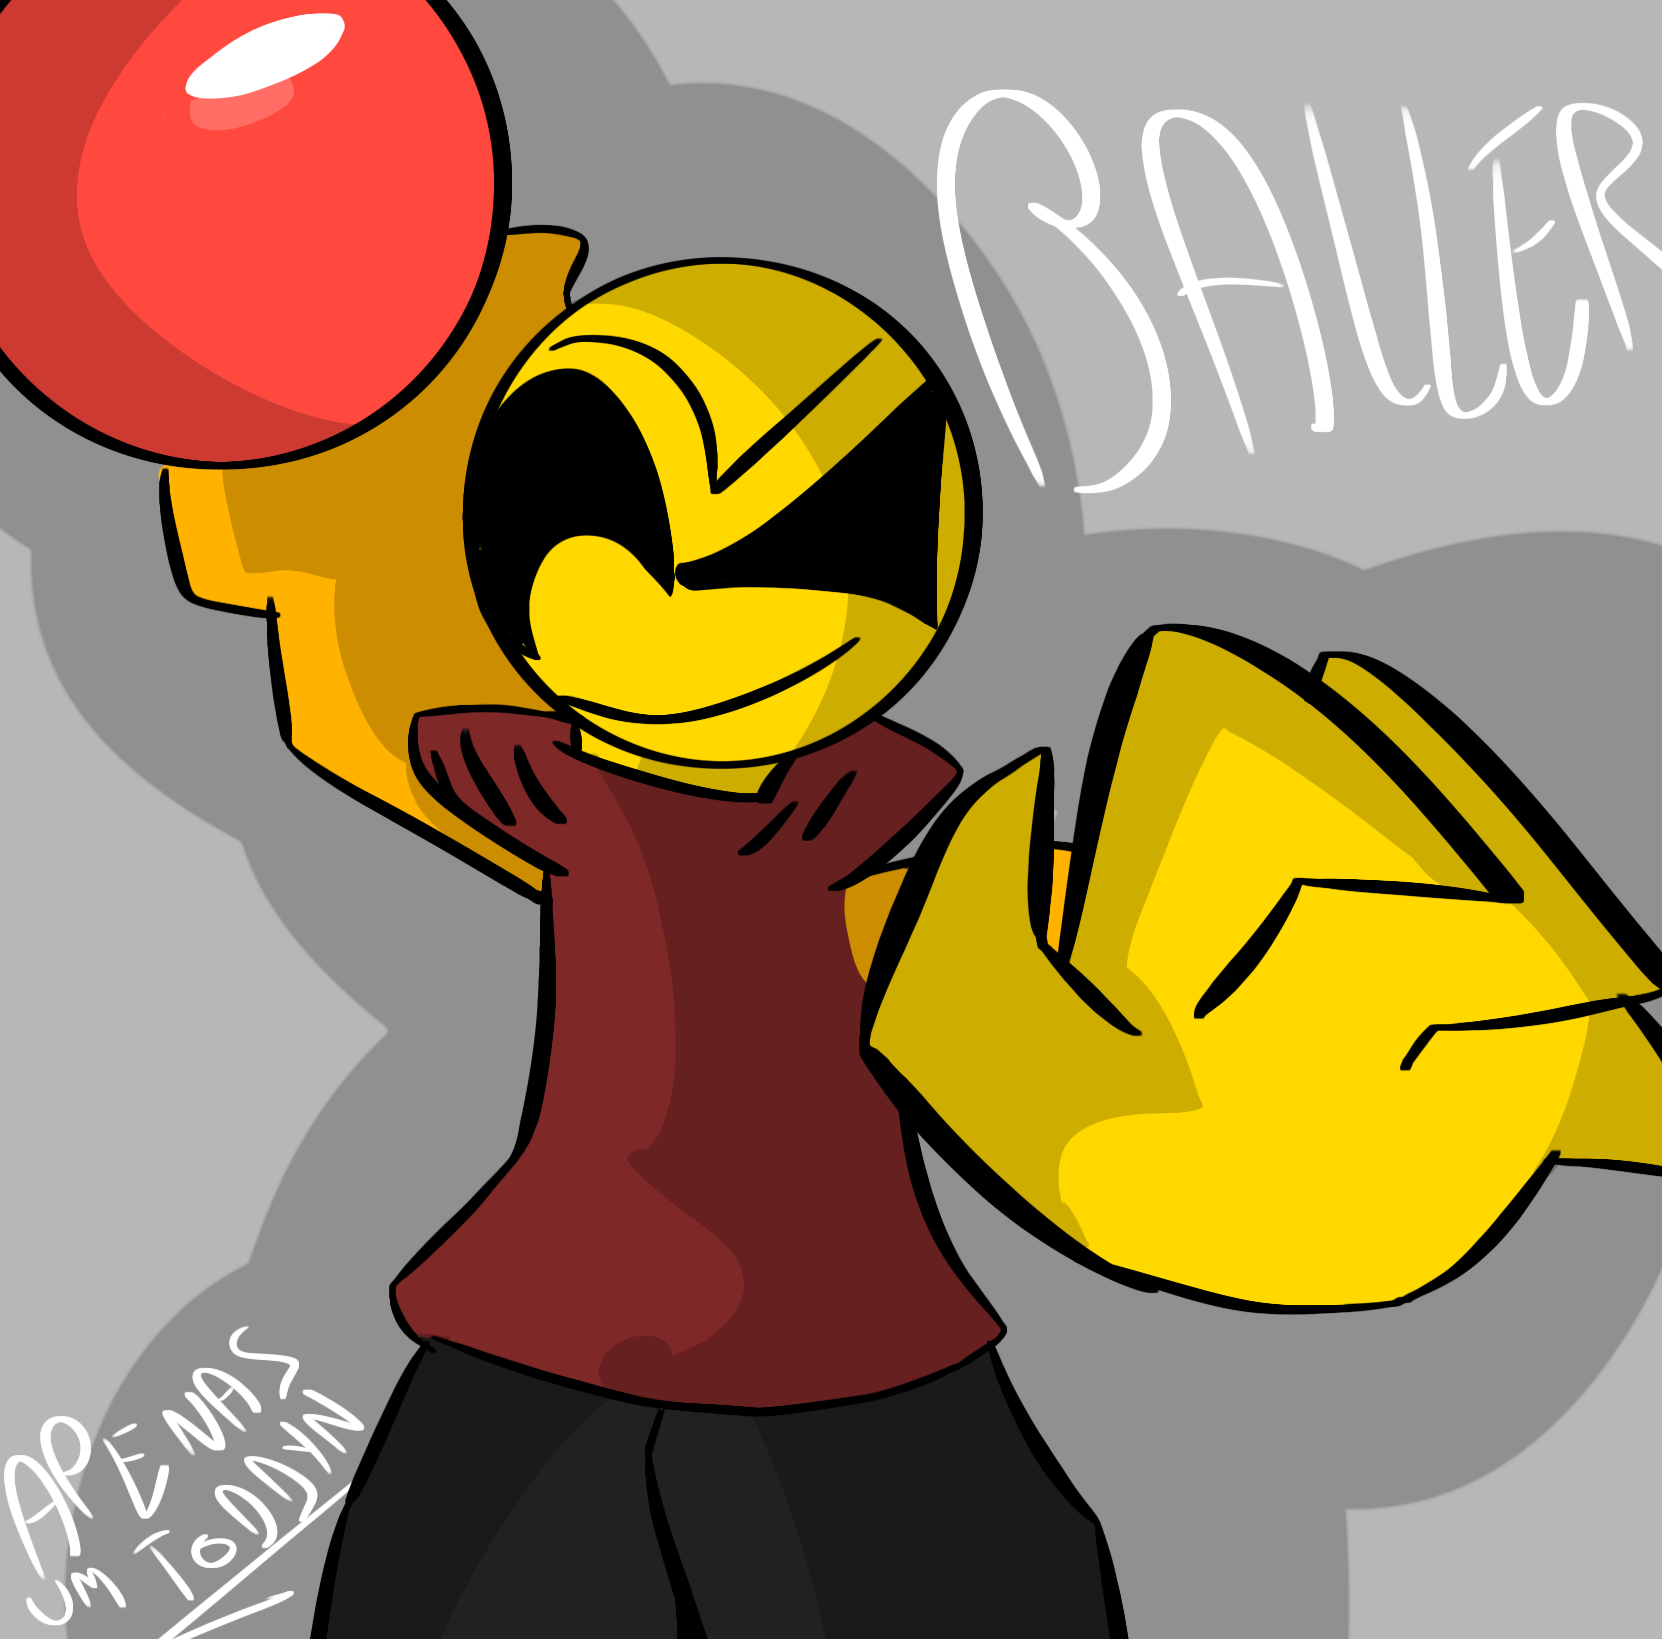 madness combat baller, Roblox Baller / Stop Posting About Baller